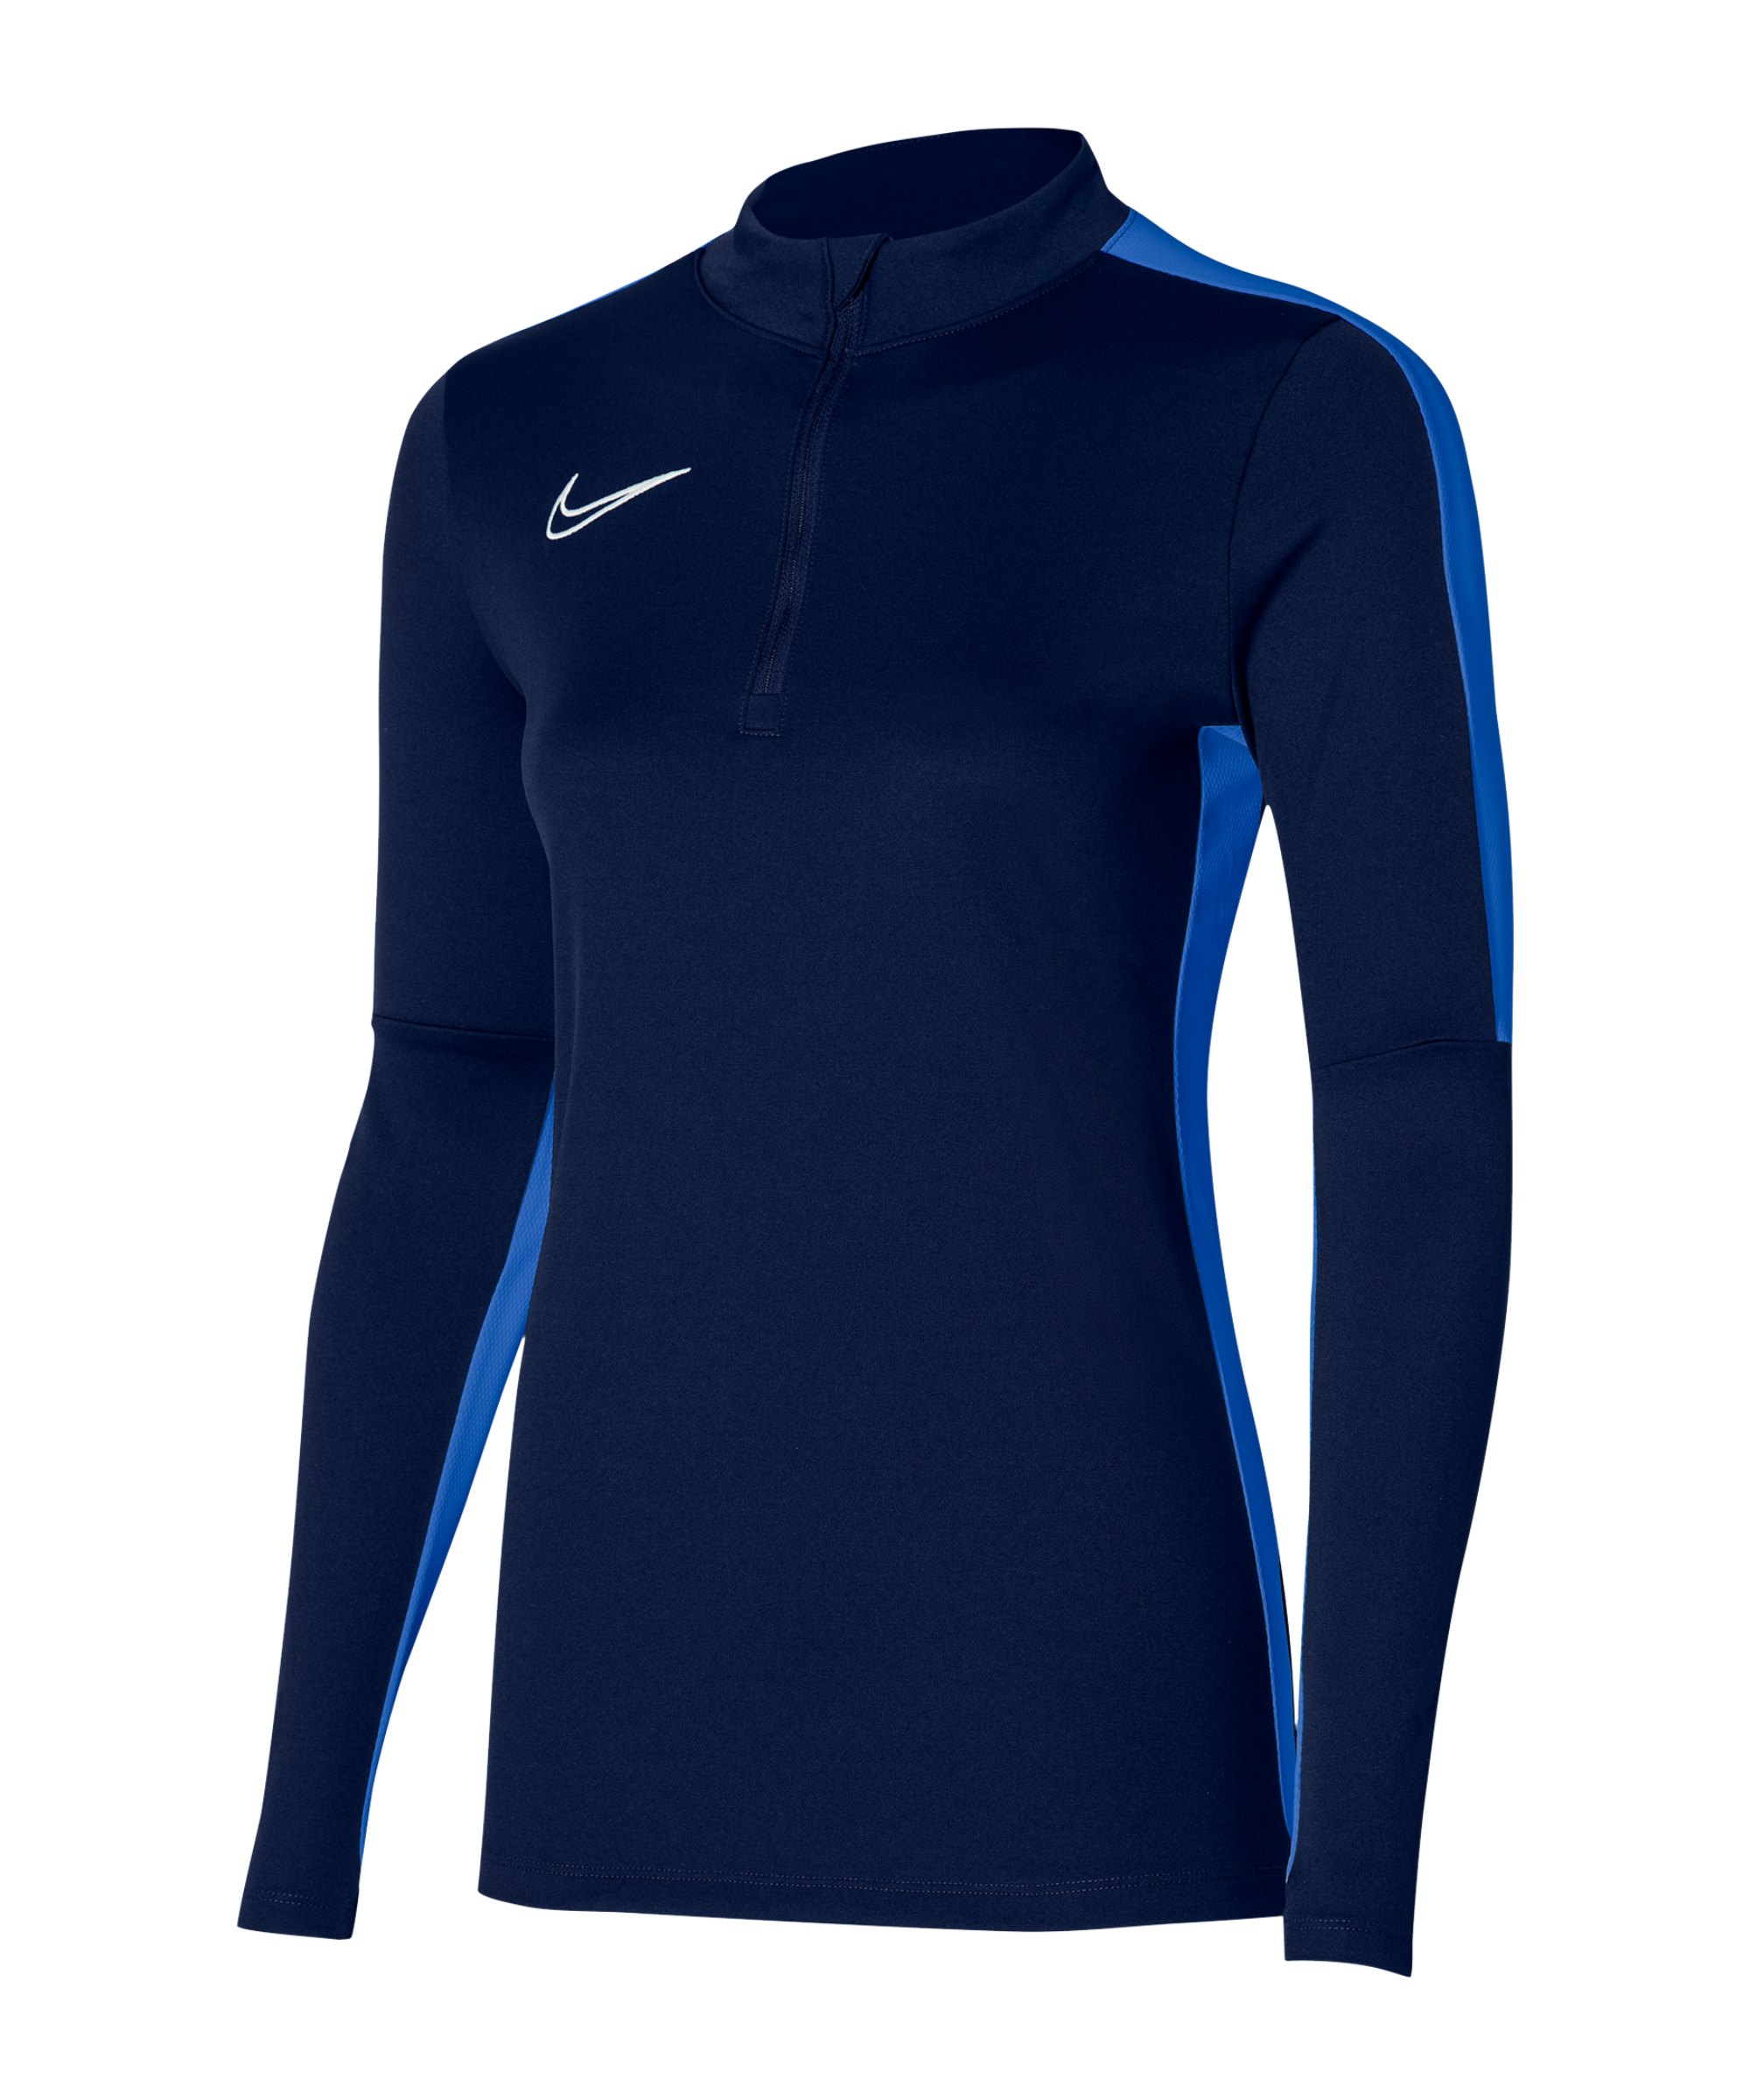 Nike Academy Drill Top Damen Blau F451 - blau